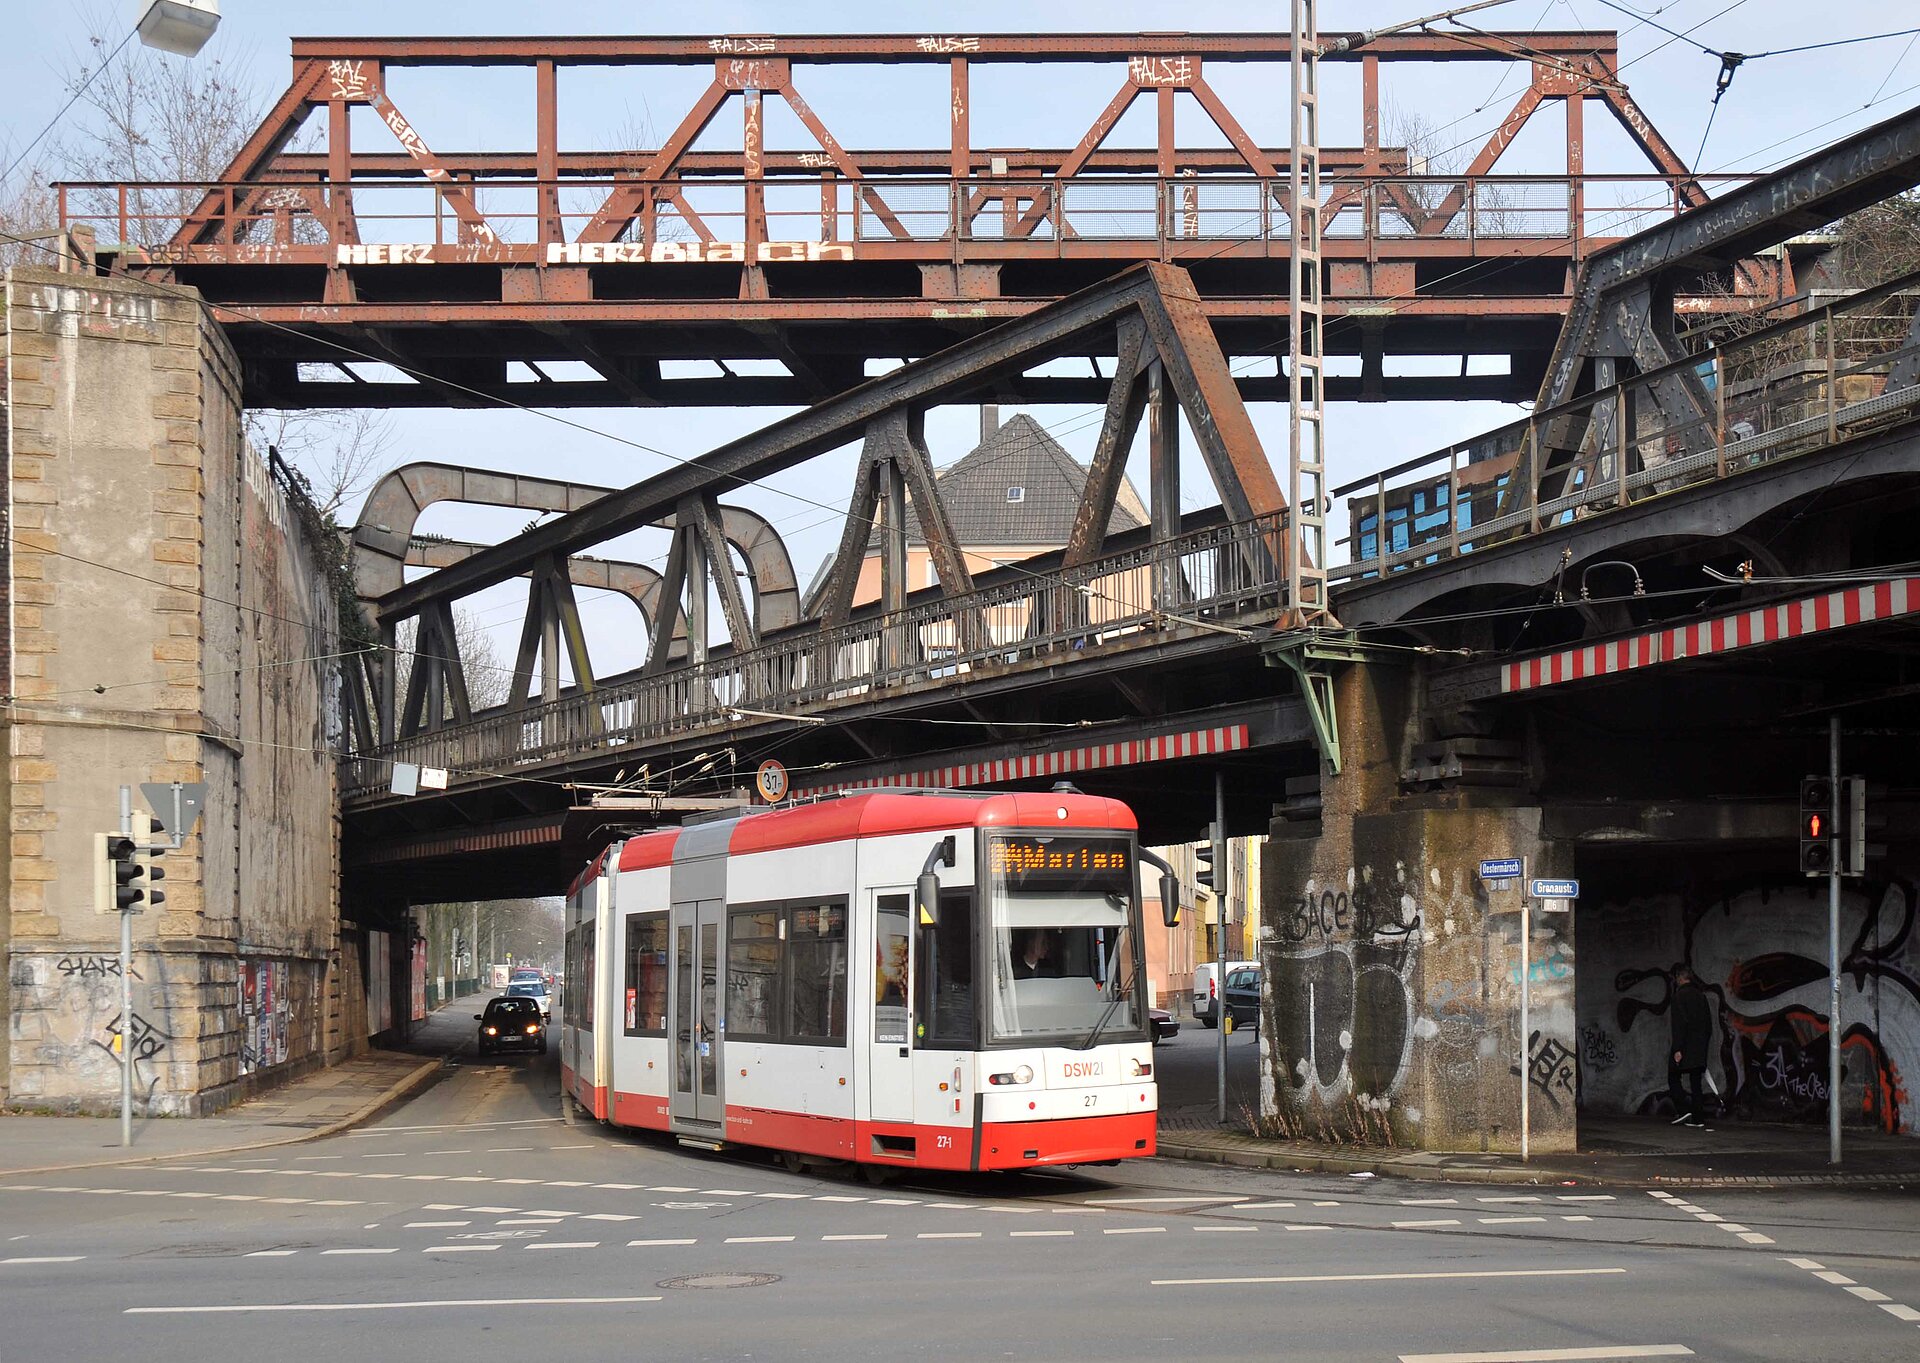 Eisenbahnbrücken-Ensemble in Dortmund.